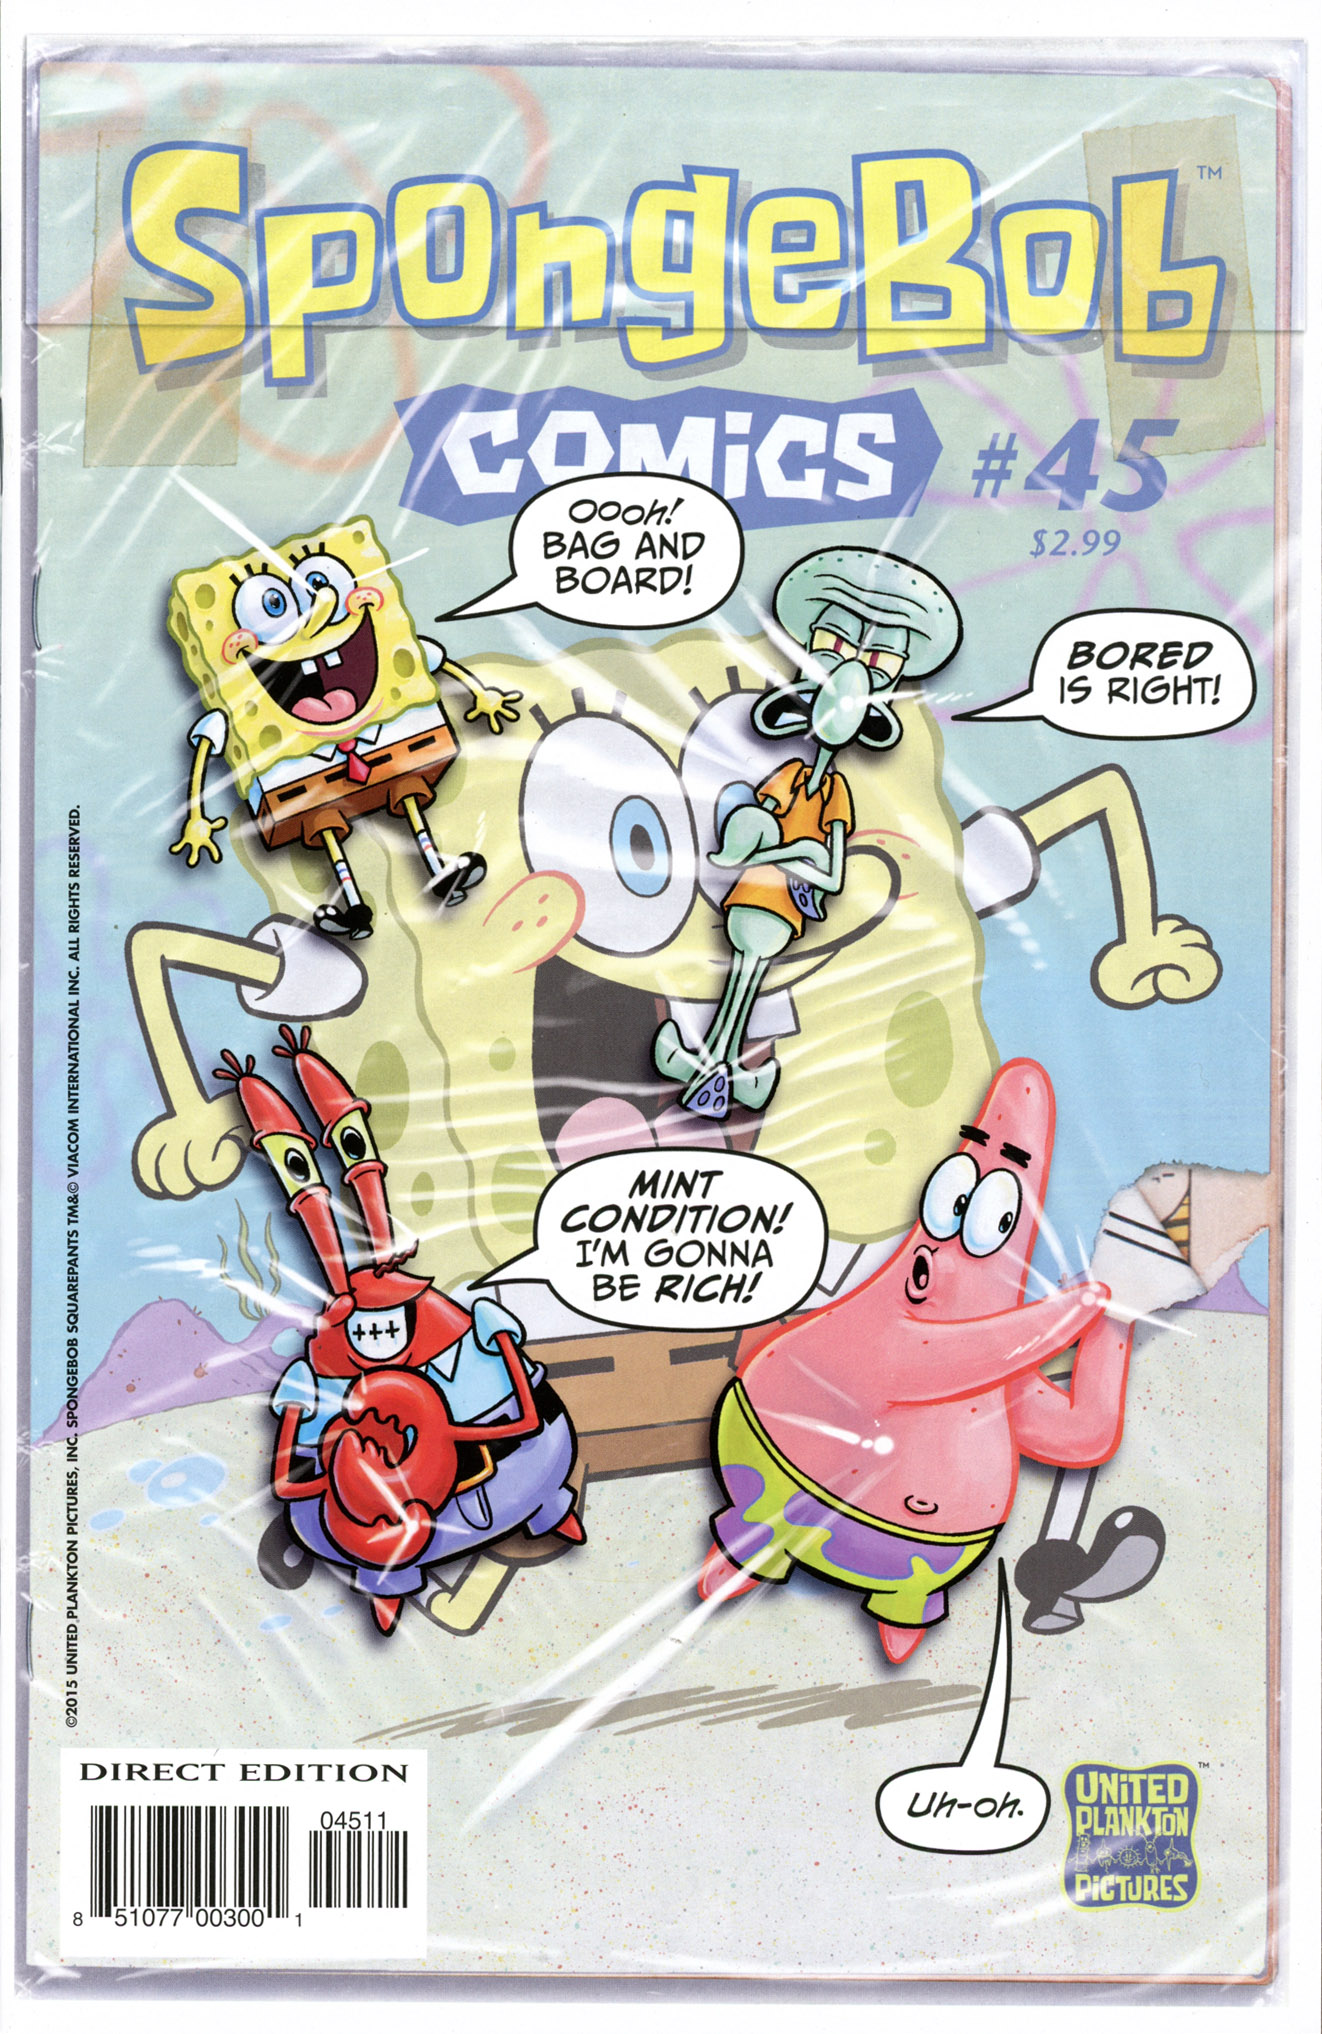 Spongebob Tranny Porn - Spongebob Comics Issue 45 | Read Spongebob Comics Issue 45 comic online in  high quality. Read Full Comic online for free - Read comics online in high  quality .| READ COMIC ONLINE